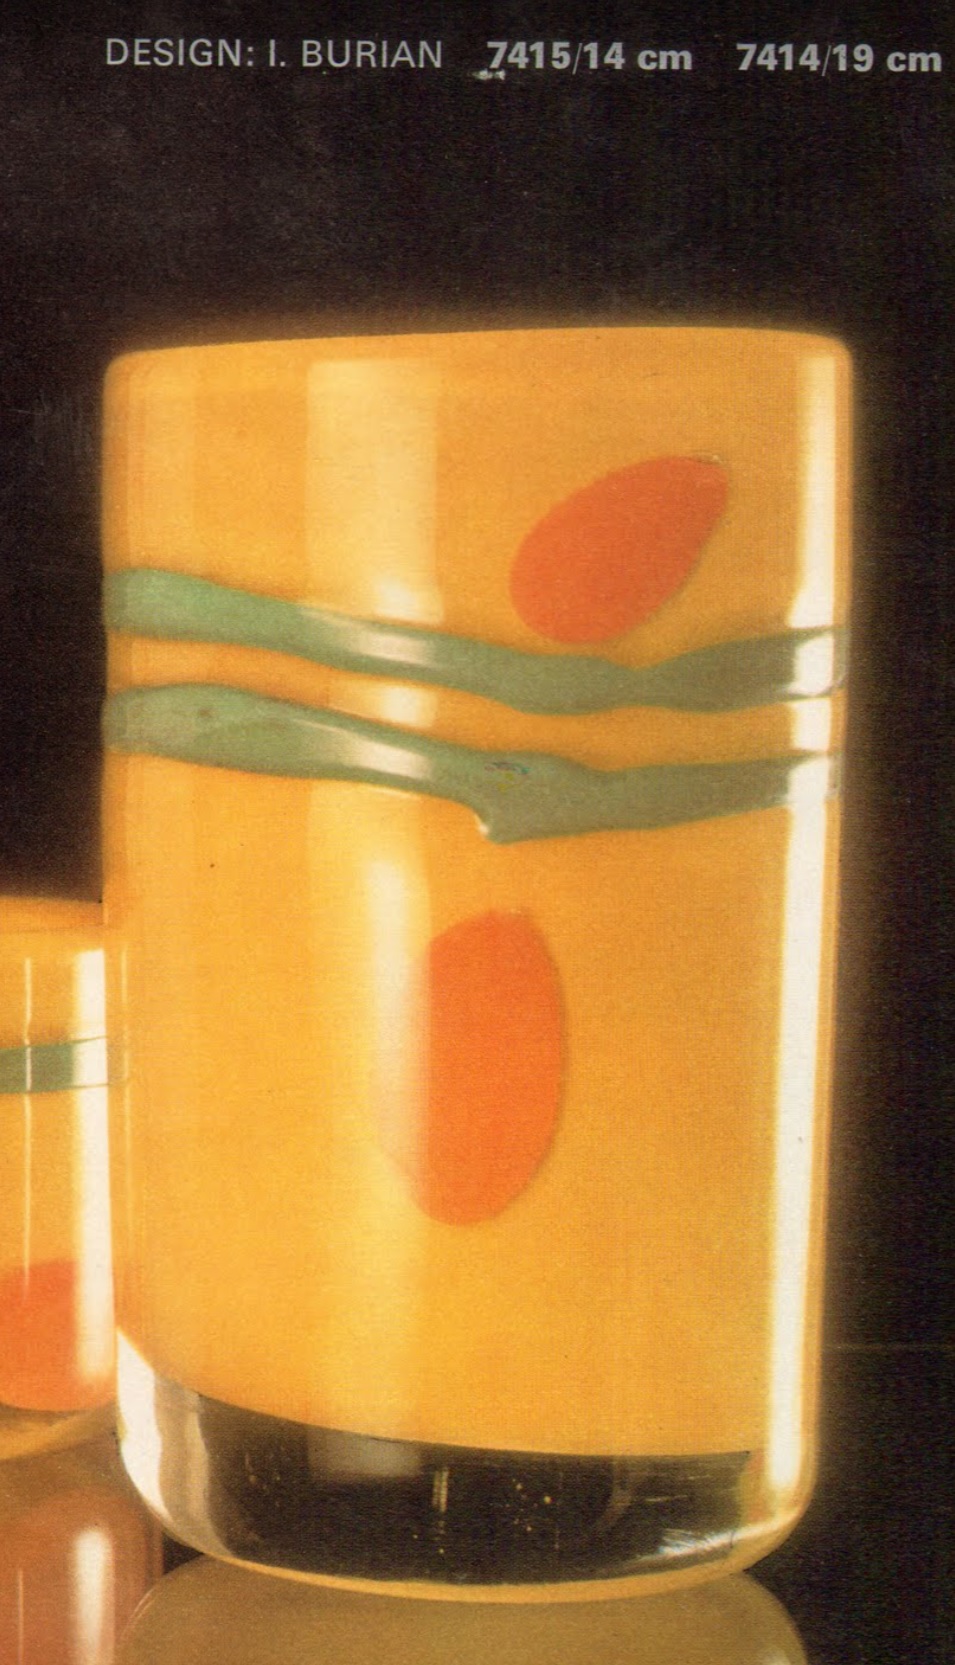 I. Burian - 7414/19, Vase